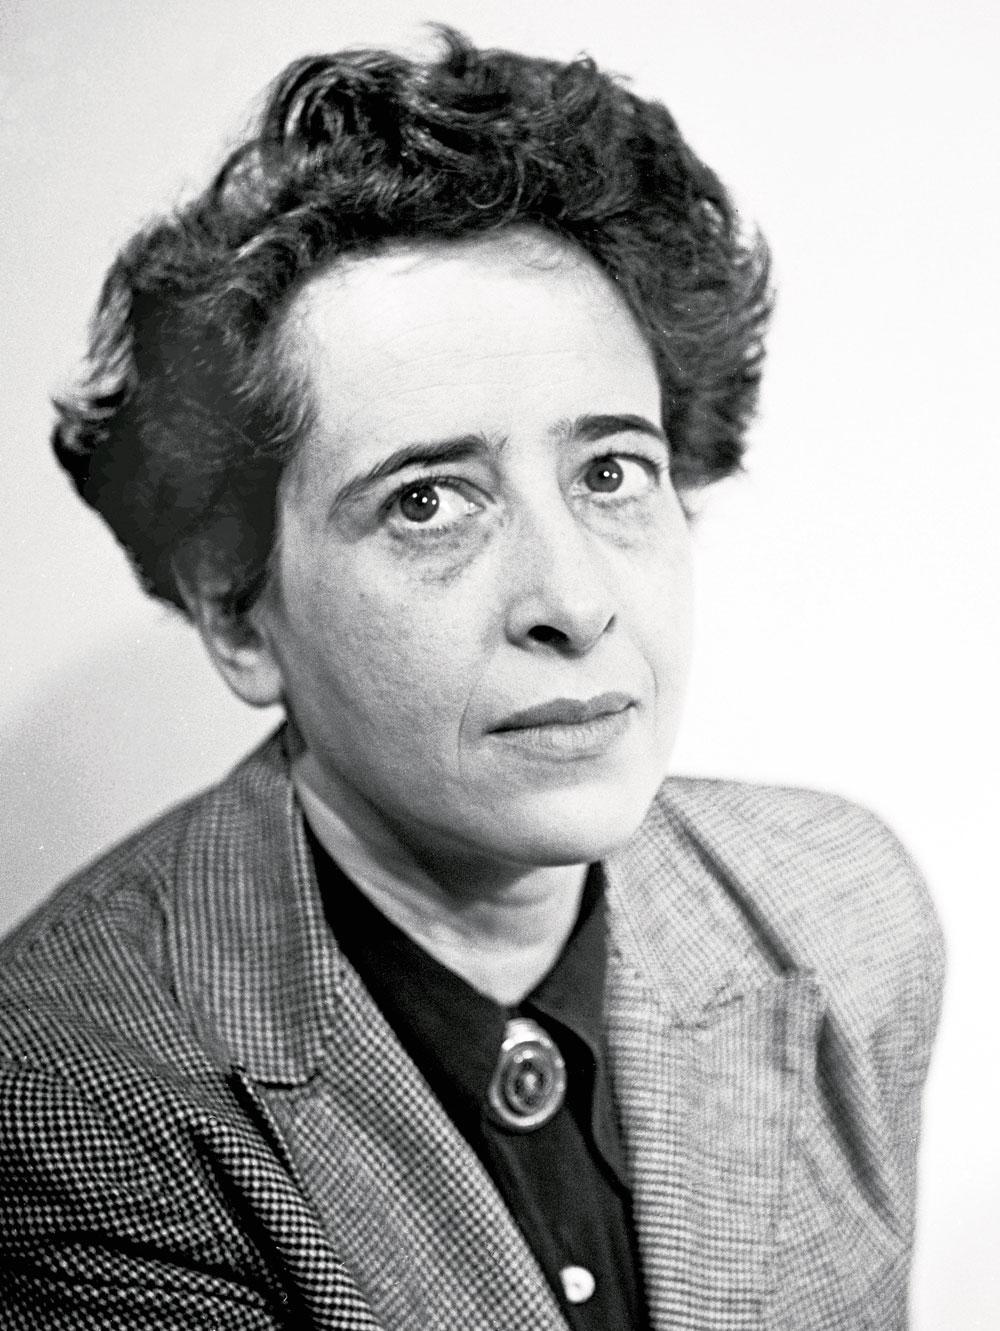 Hoe kunnen we mens blijven? het werk van de Duits-Joodse filosofe Hannah Arendt blijft een eyeopener